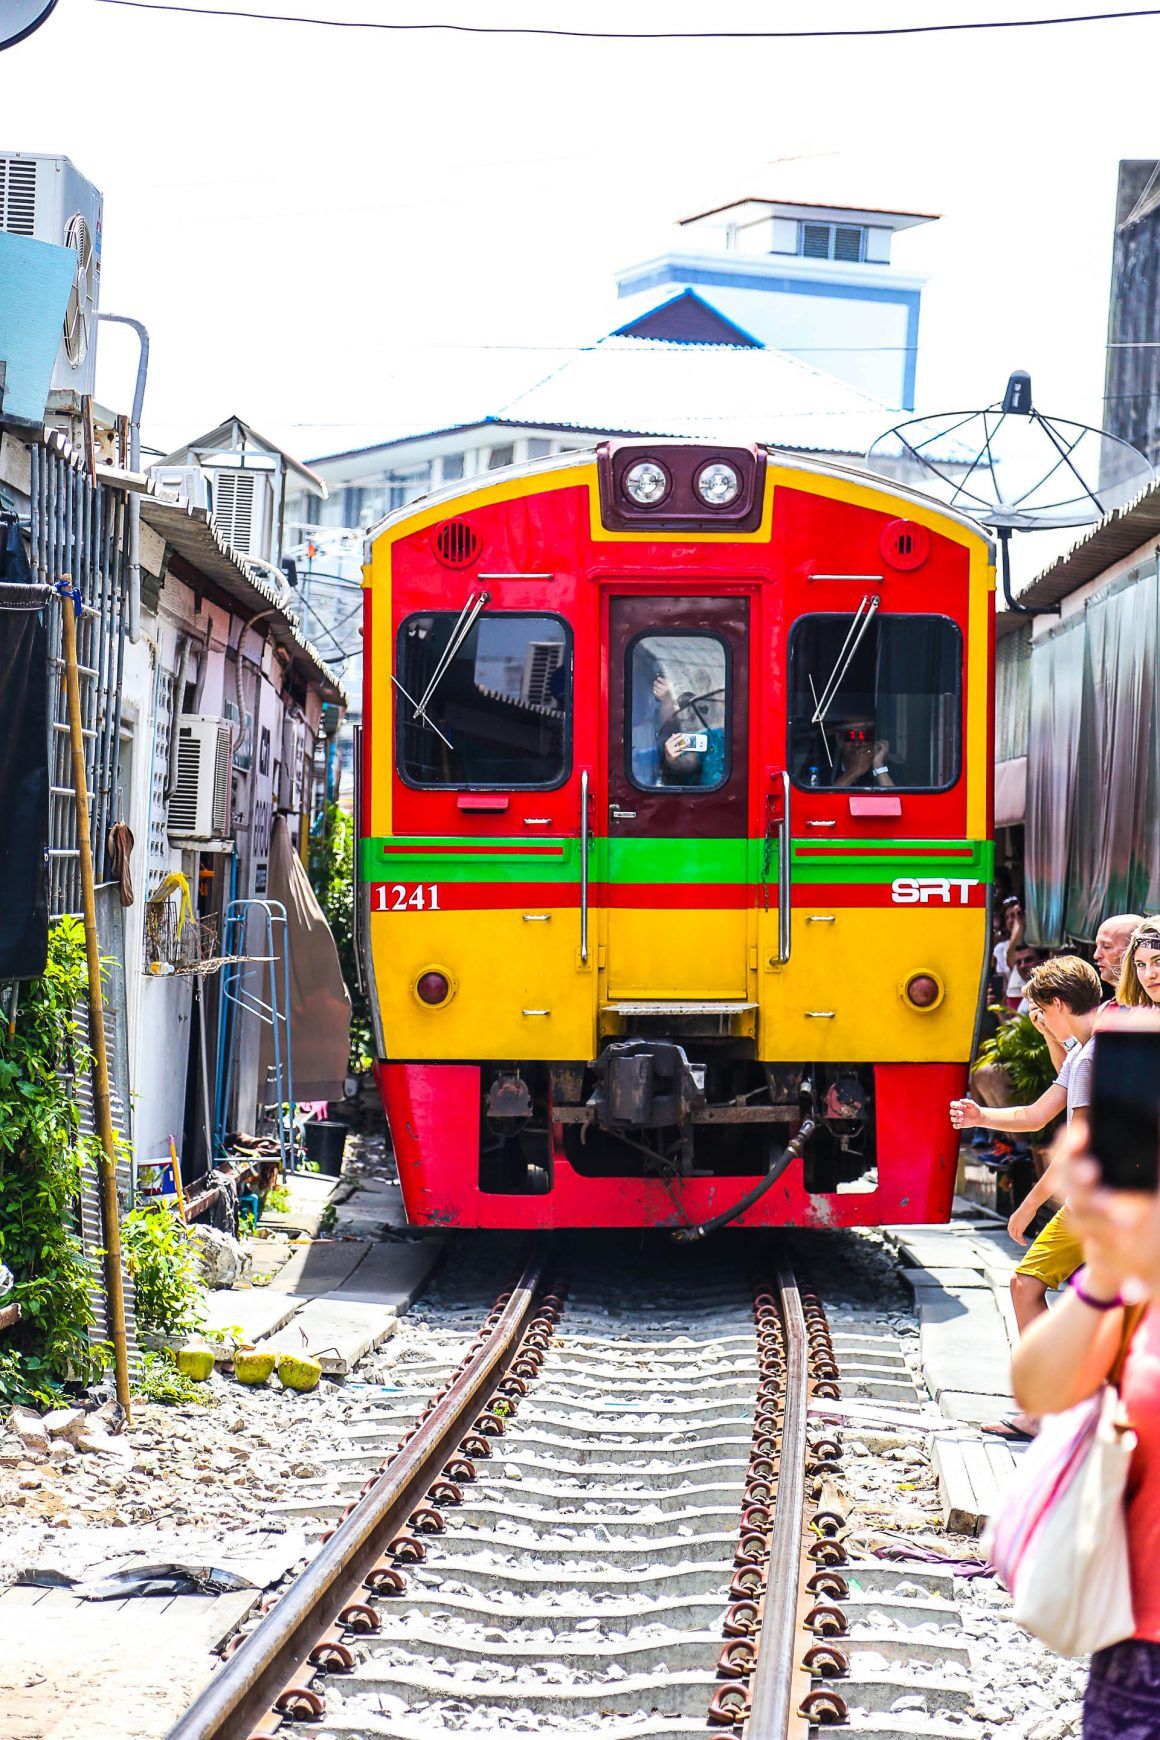 Lire la suite à propos de l’article Pinterest:  Marché ferroviaire : le marché du ferrovie à Bangkok |  je nourris